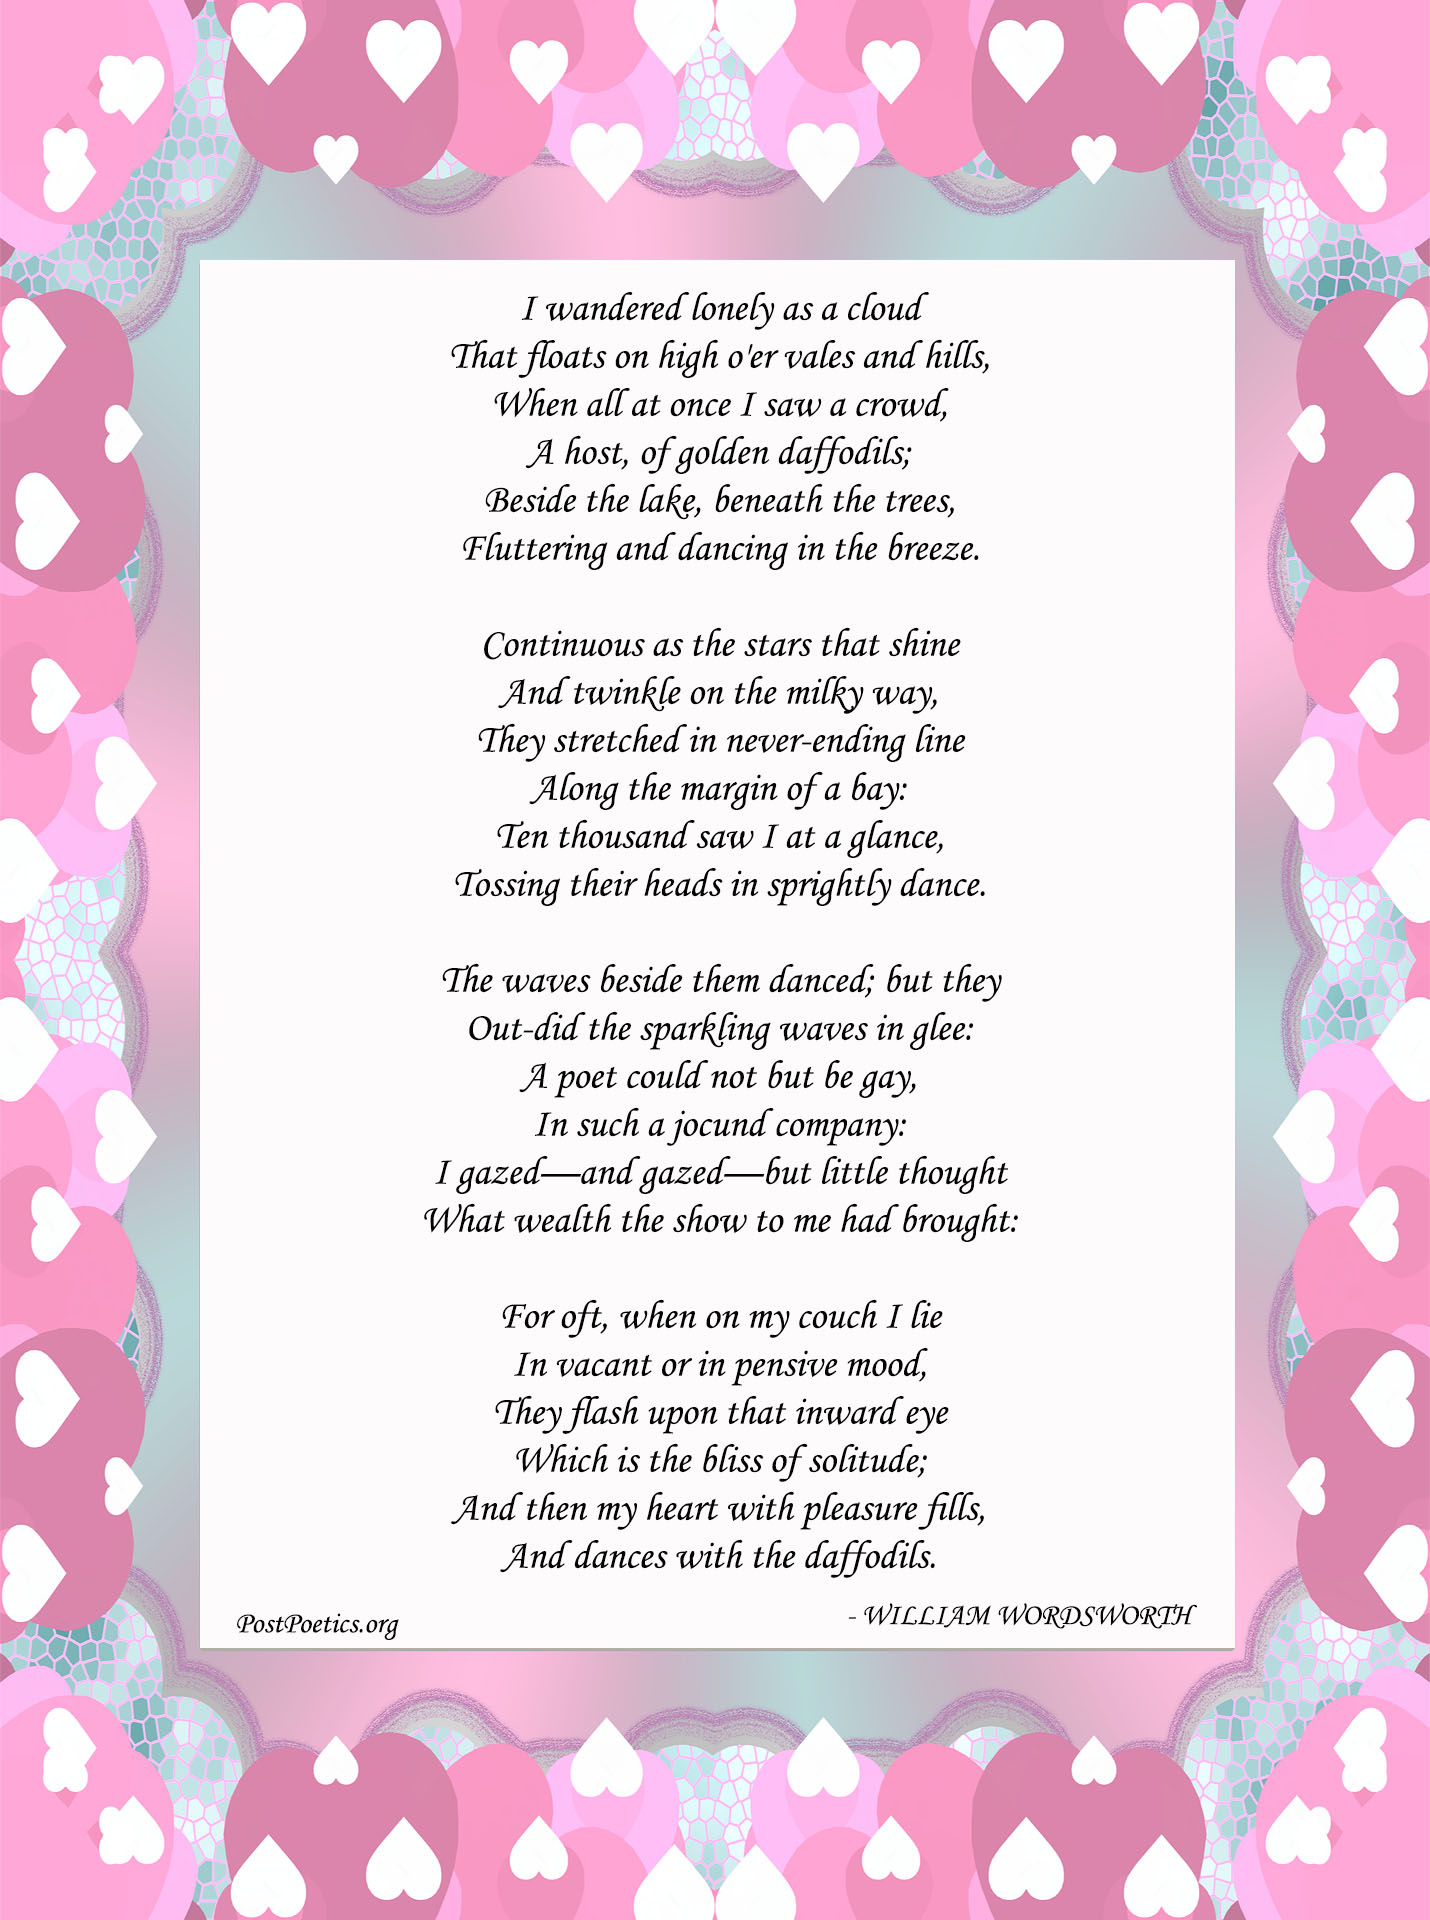 William Wordsworth Daffodil Poem | Daffodils Poem Recitation